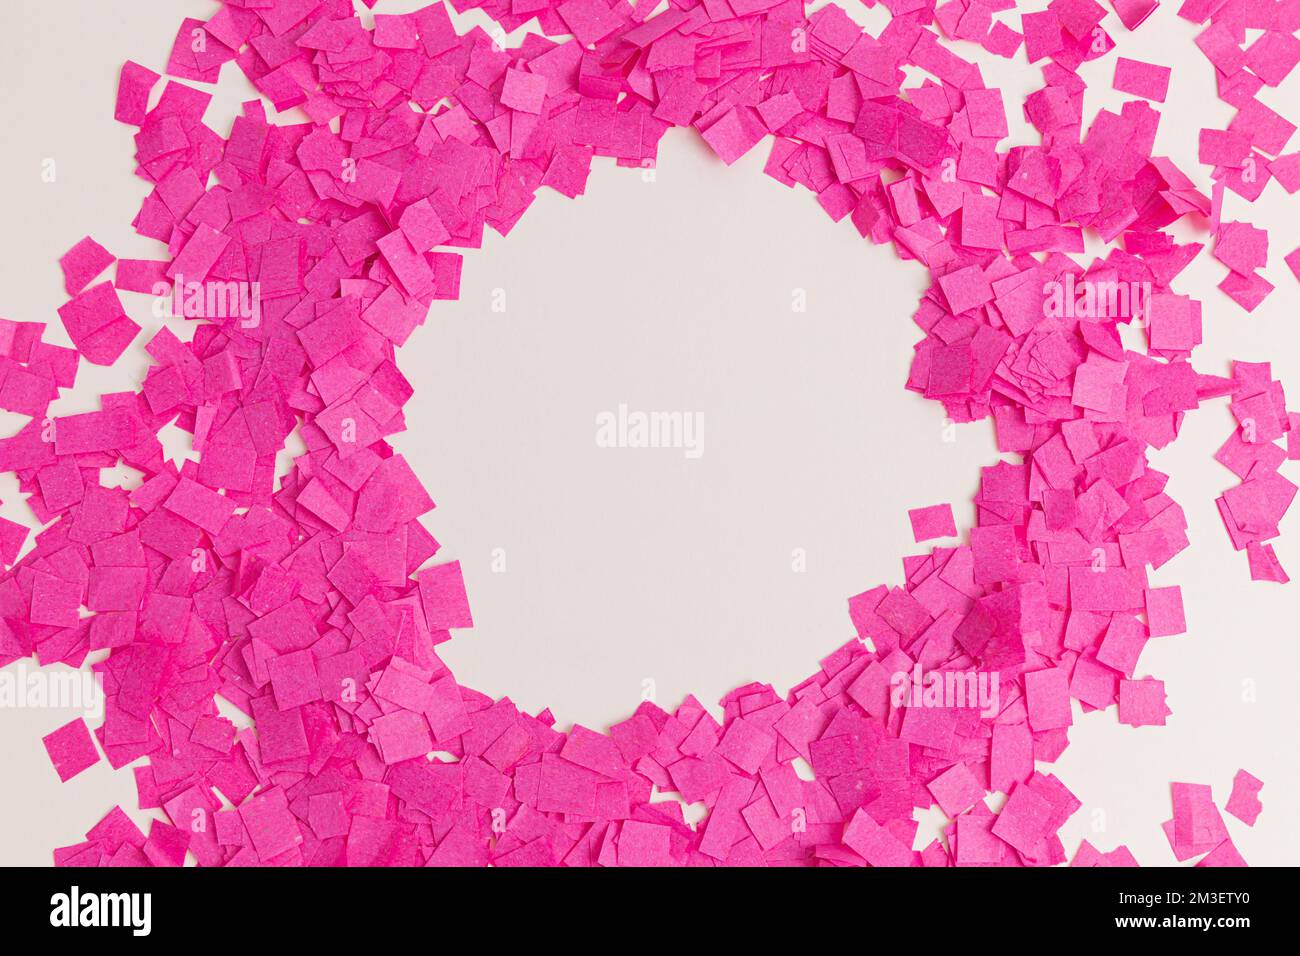 festa creativa, lunare cornice di capanno con carta coriandoli rosa su sfondo bianco, vista dall'alto Foto Stock